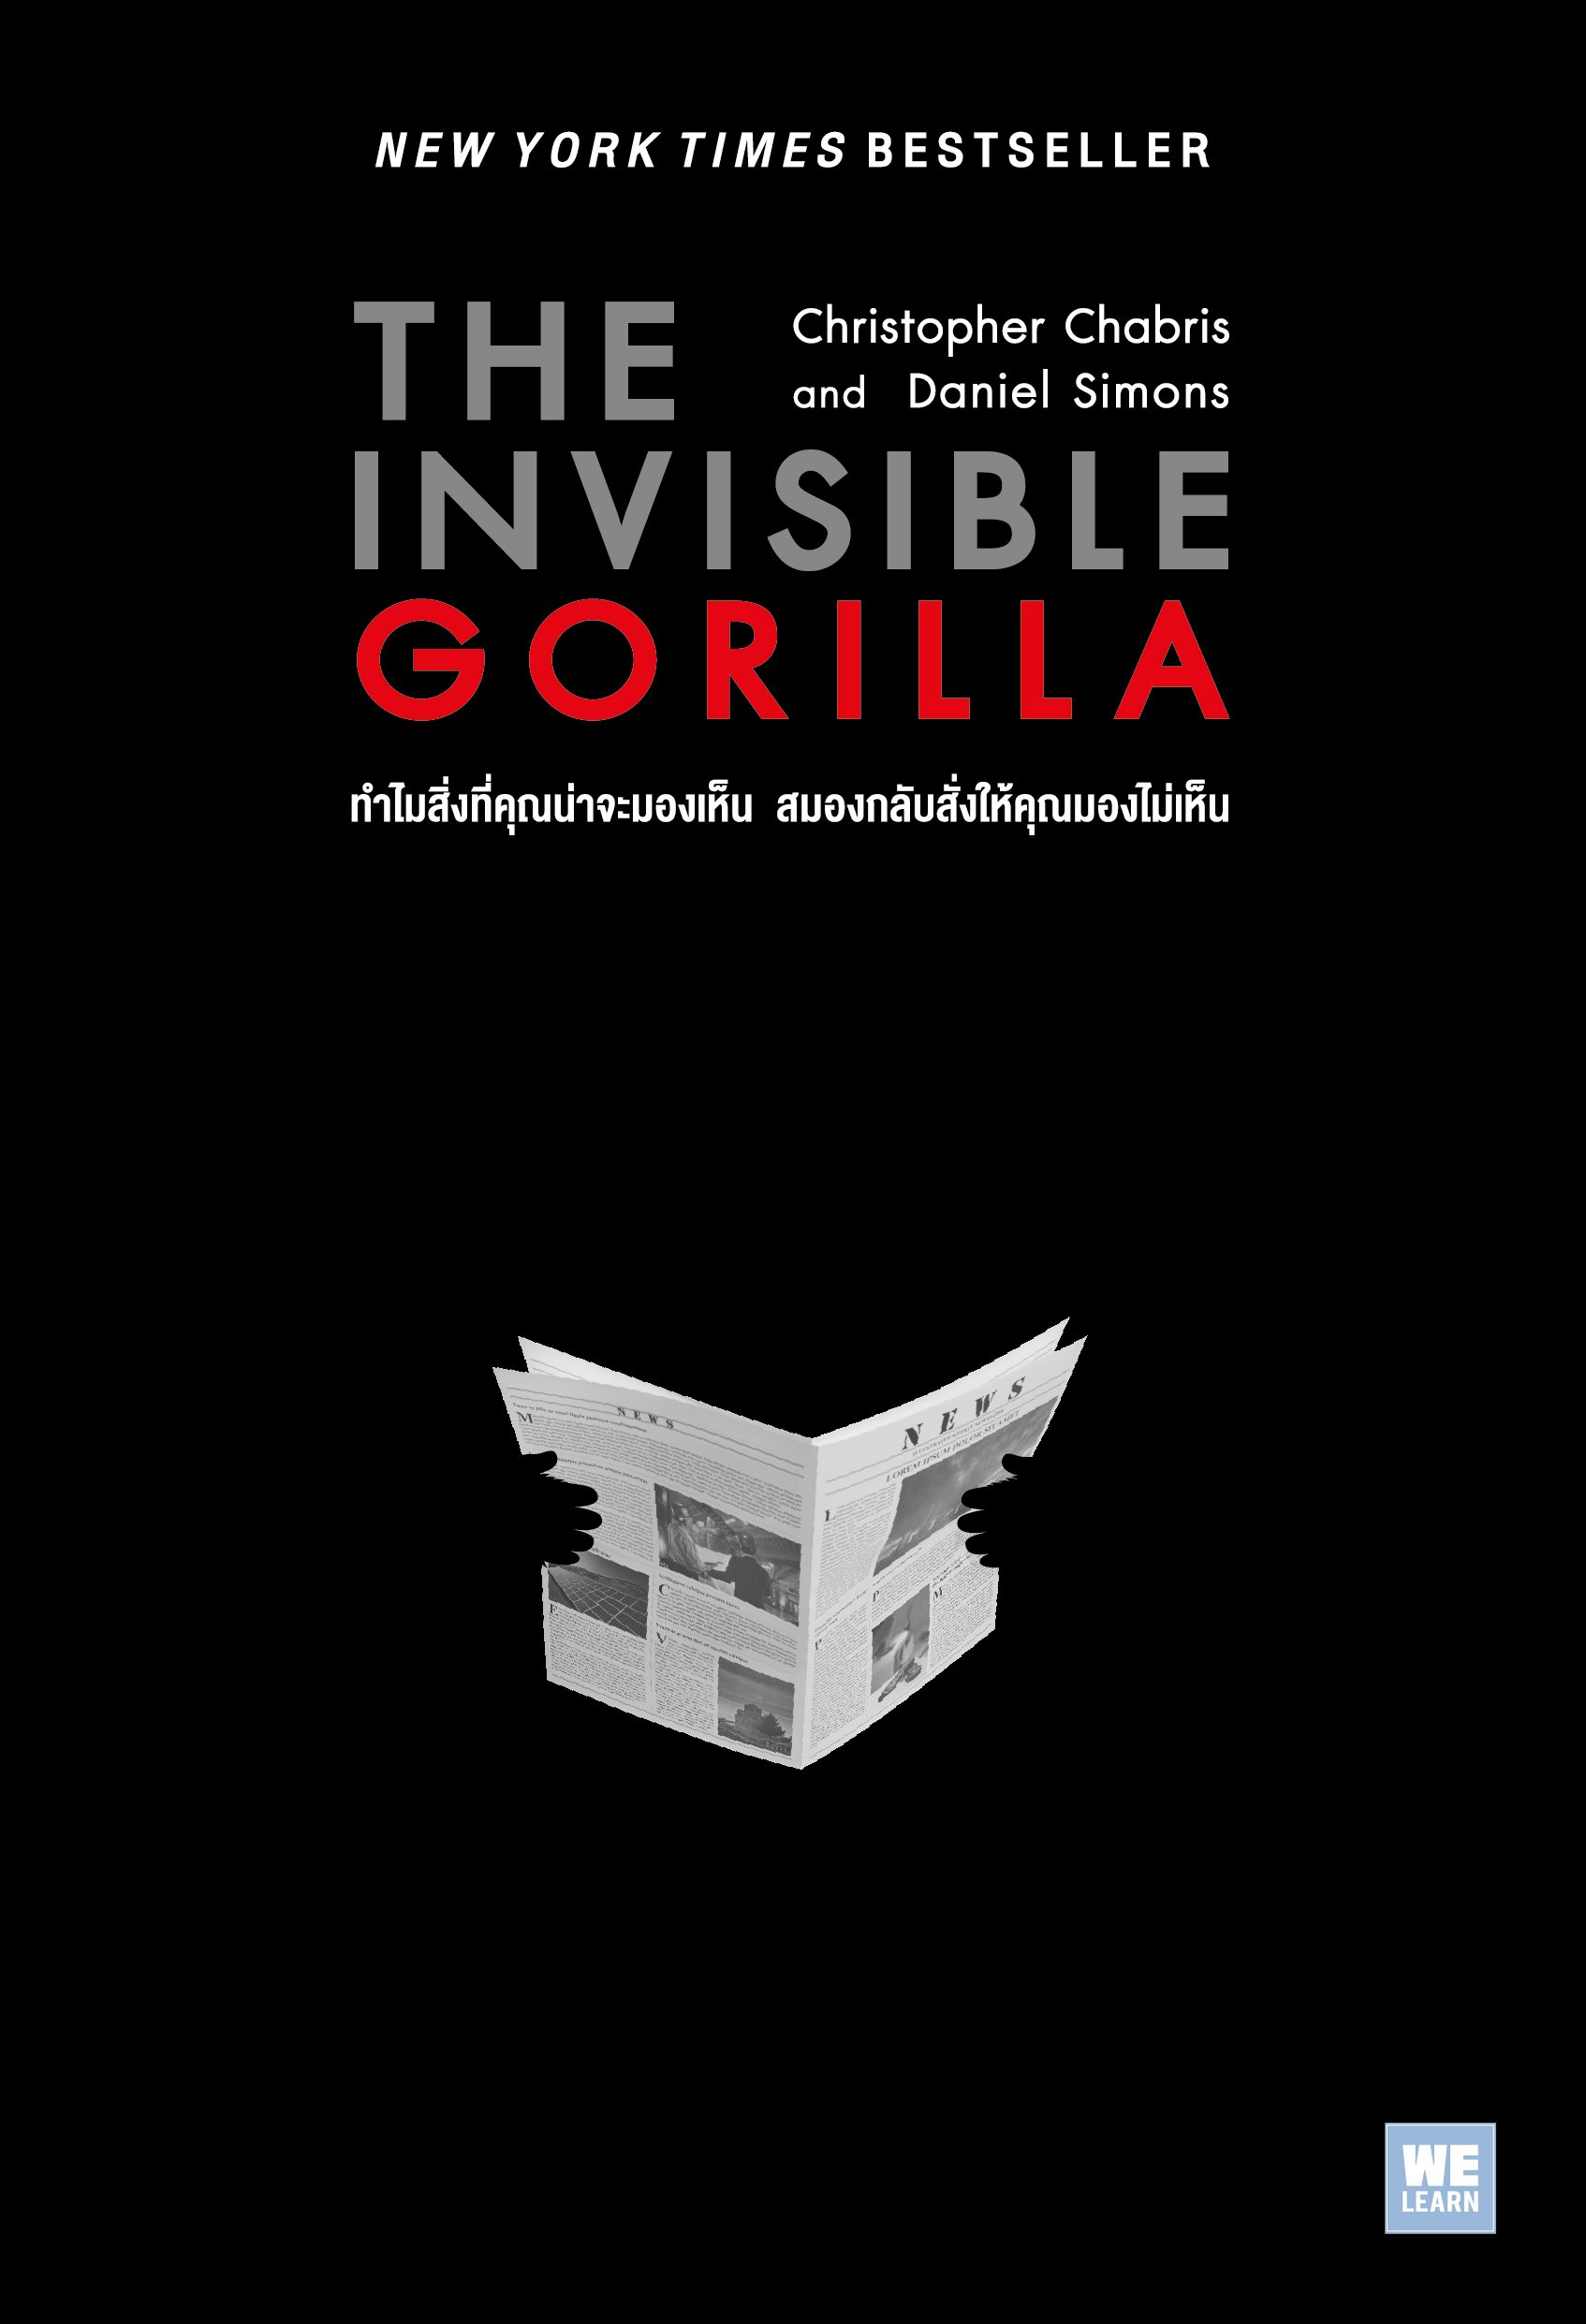 ทำไมสิ่งที่คุณน่าจะมองเห็น สมองกลับสั่งให้คุณมองไม่เห็น  (The Invisible Gorilla)